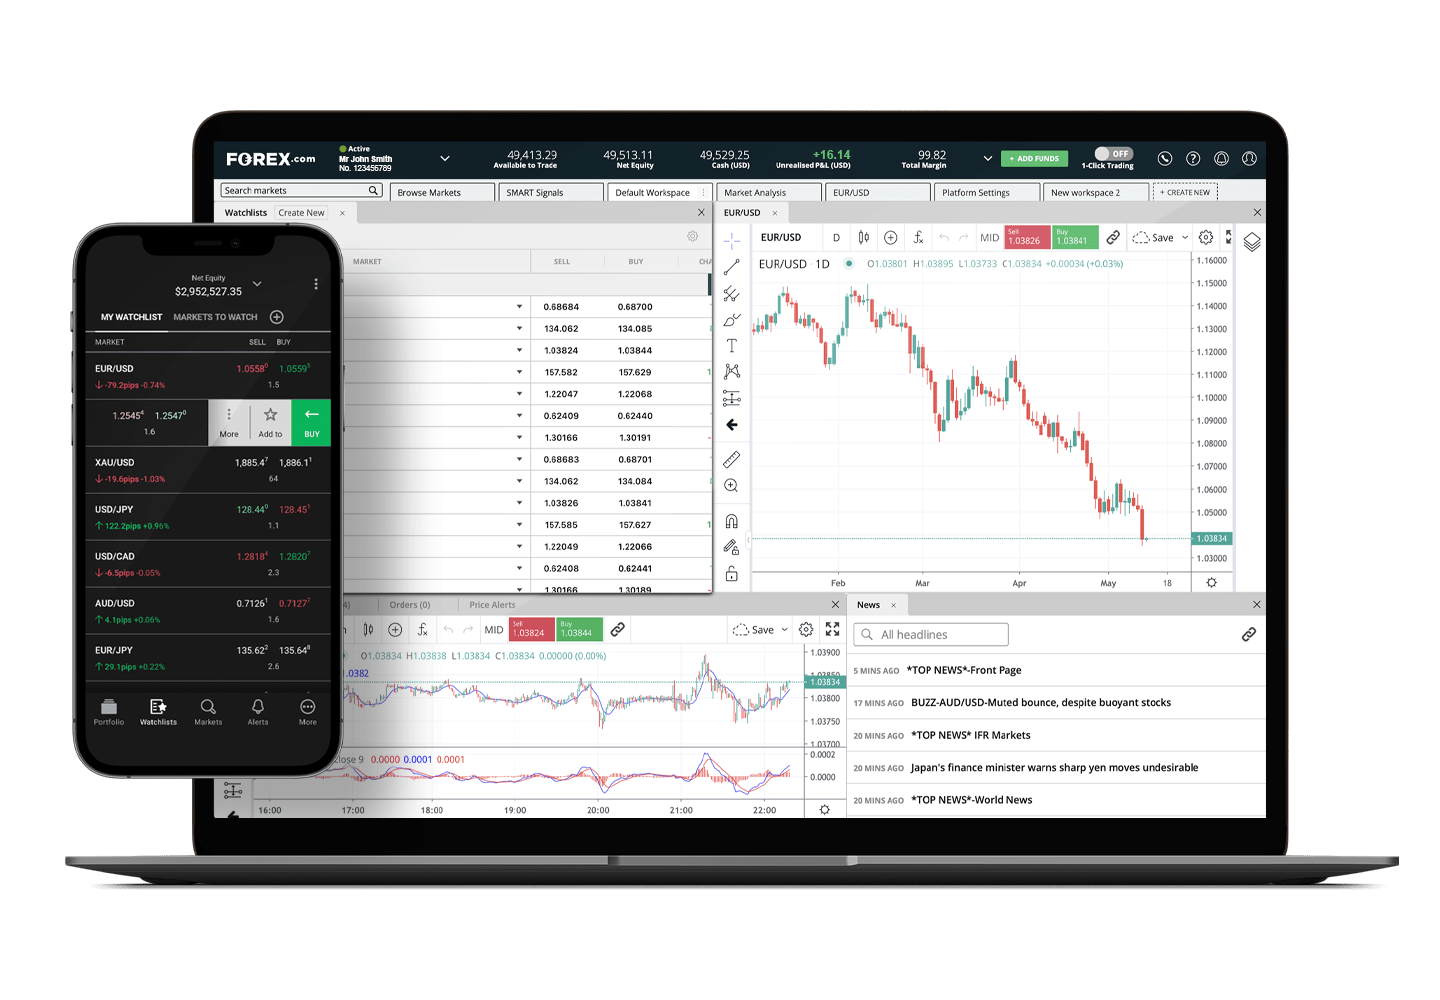 Monitor showing trading platform